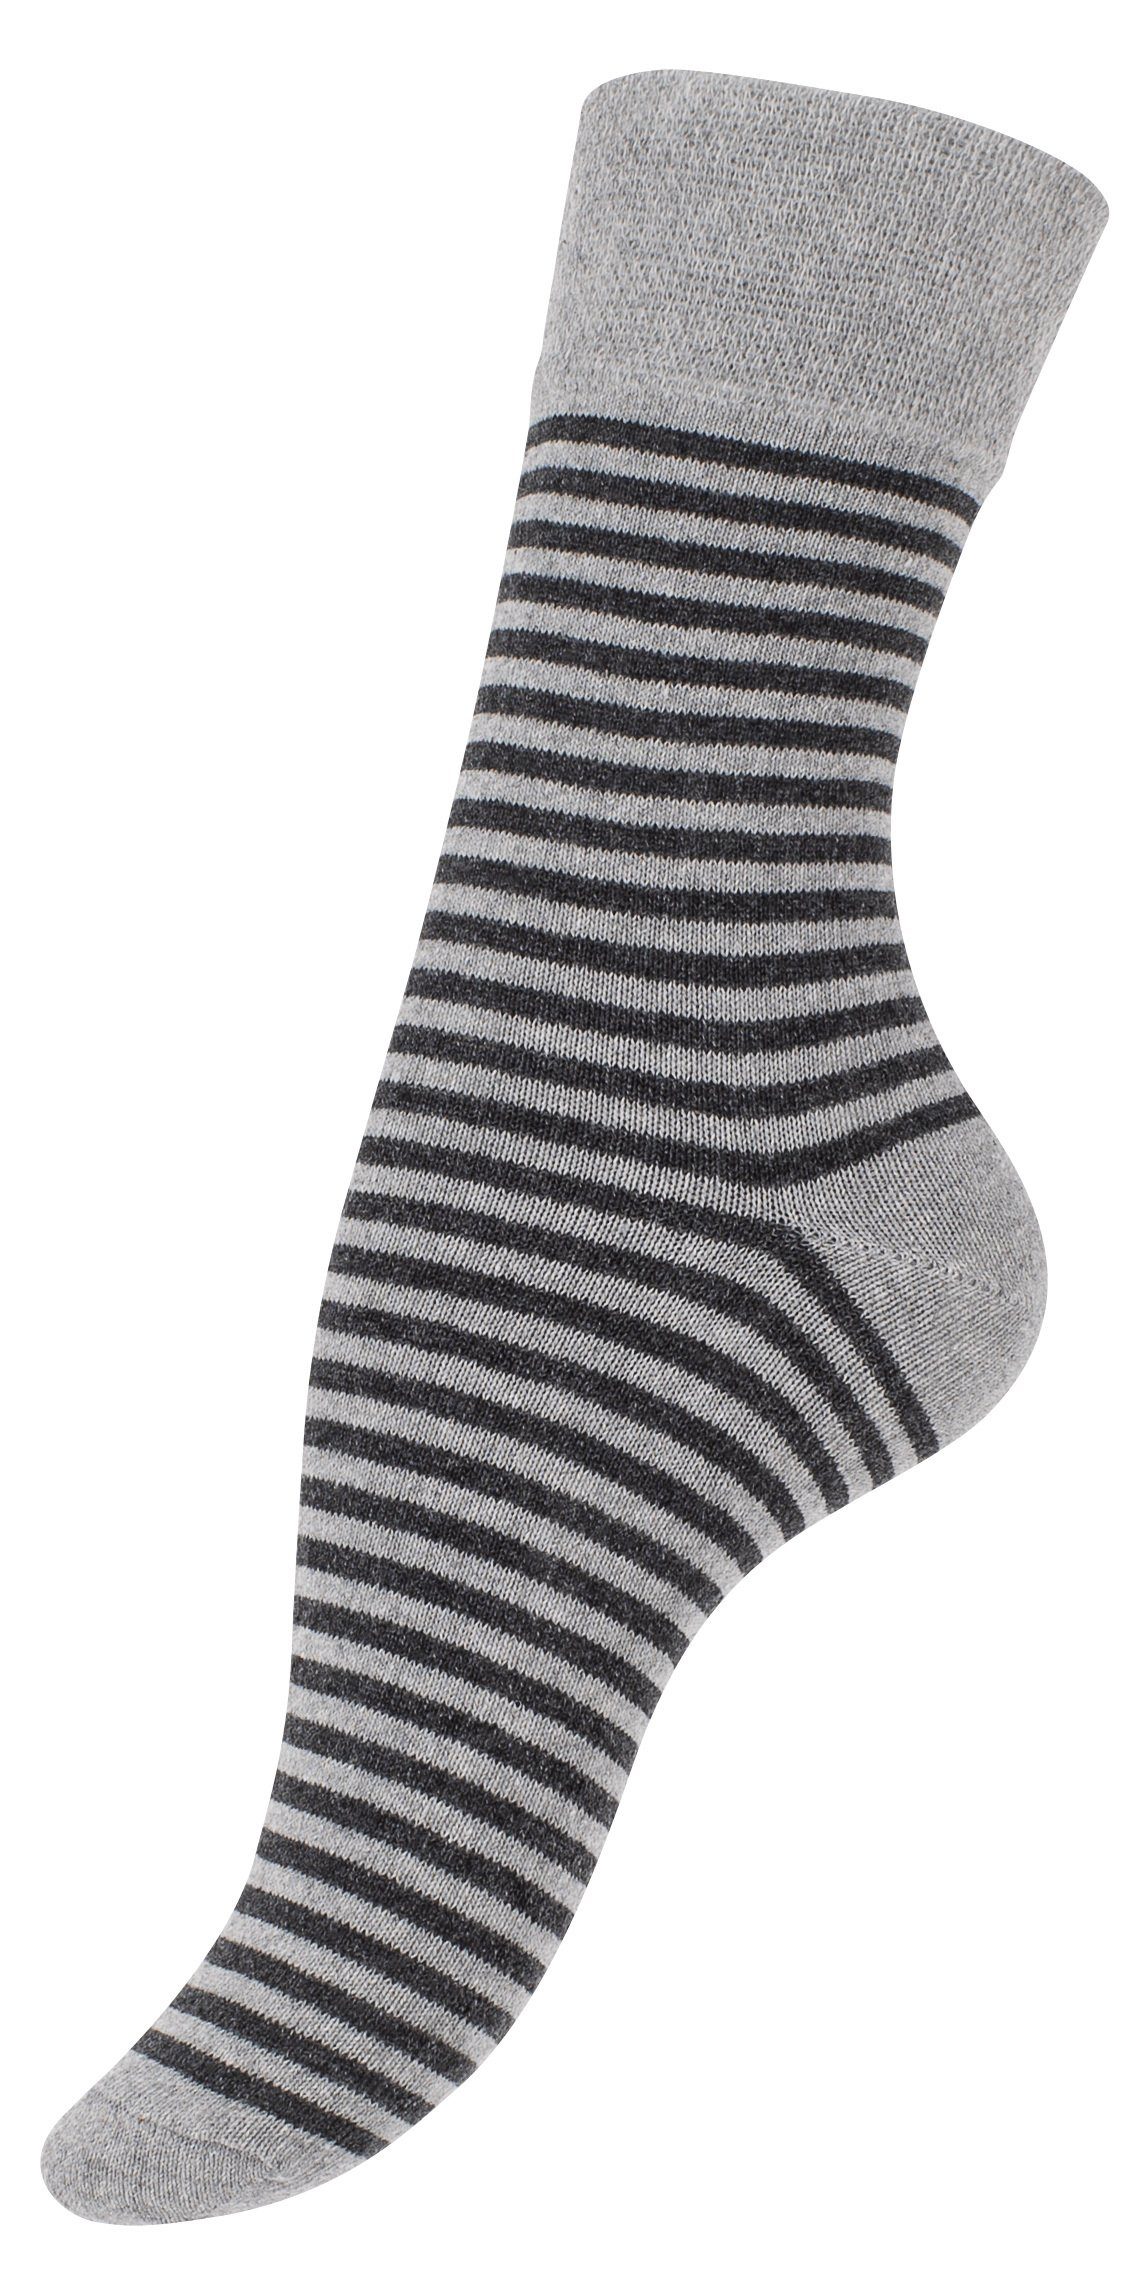 Wäsche/Bademode Socken Vincent Creation® Socken (10-Paar) in angenehmer Baumwollqualität